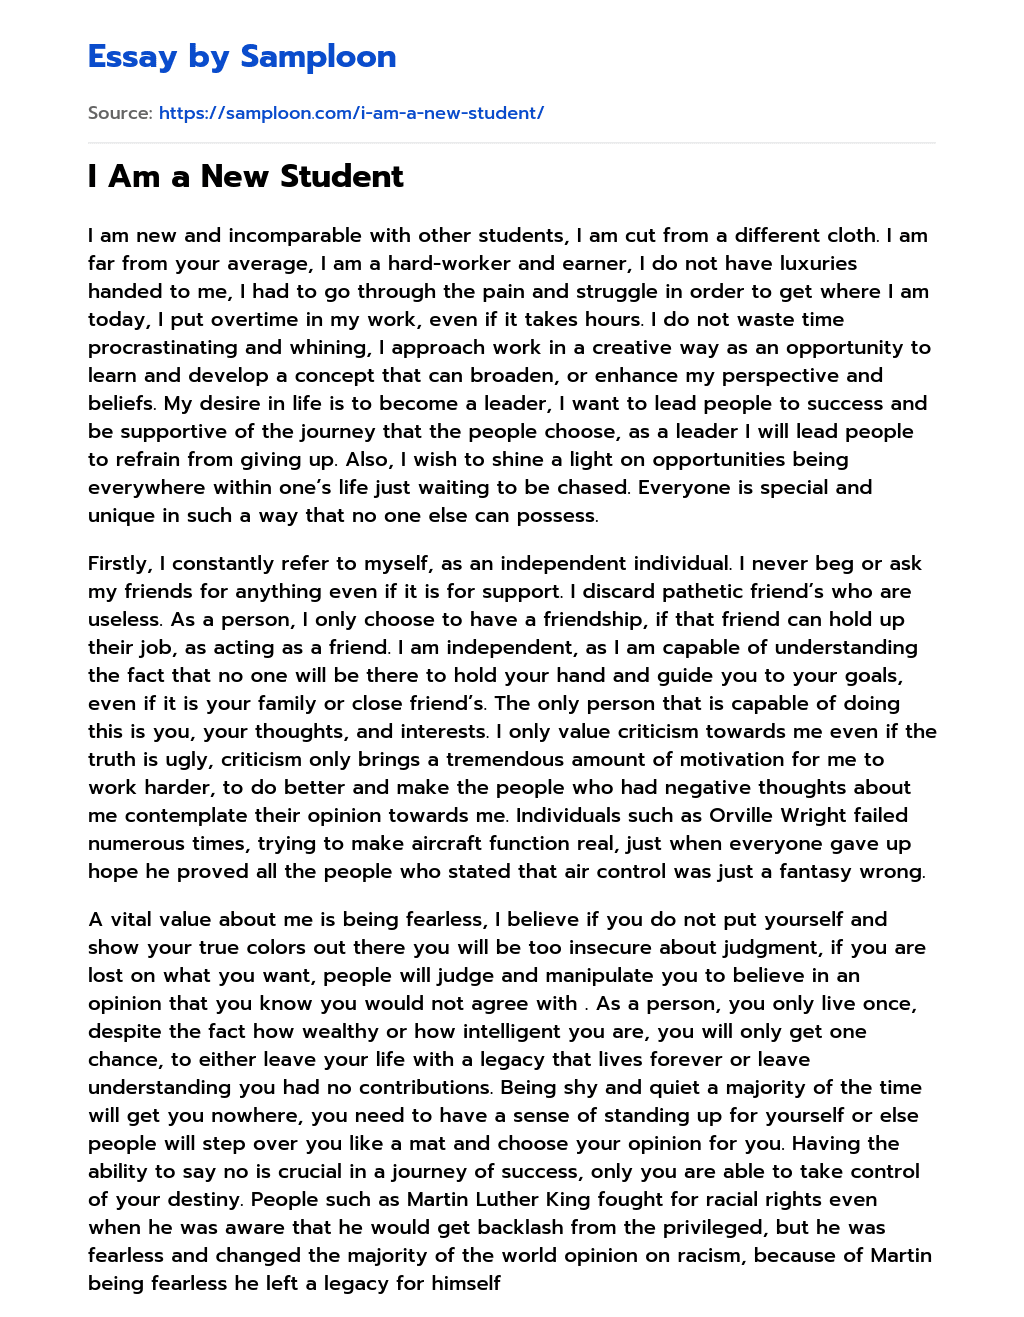 I Am a New Student essay